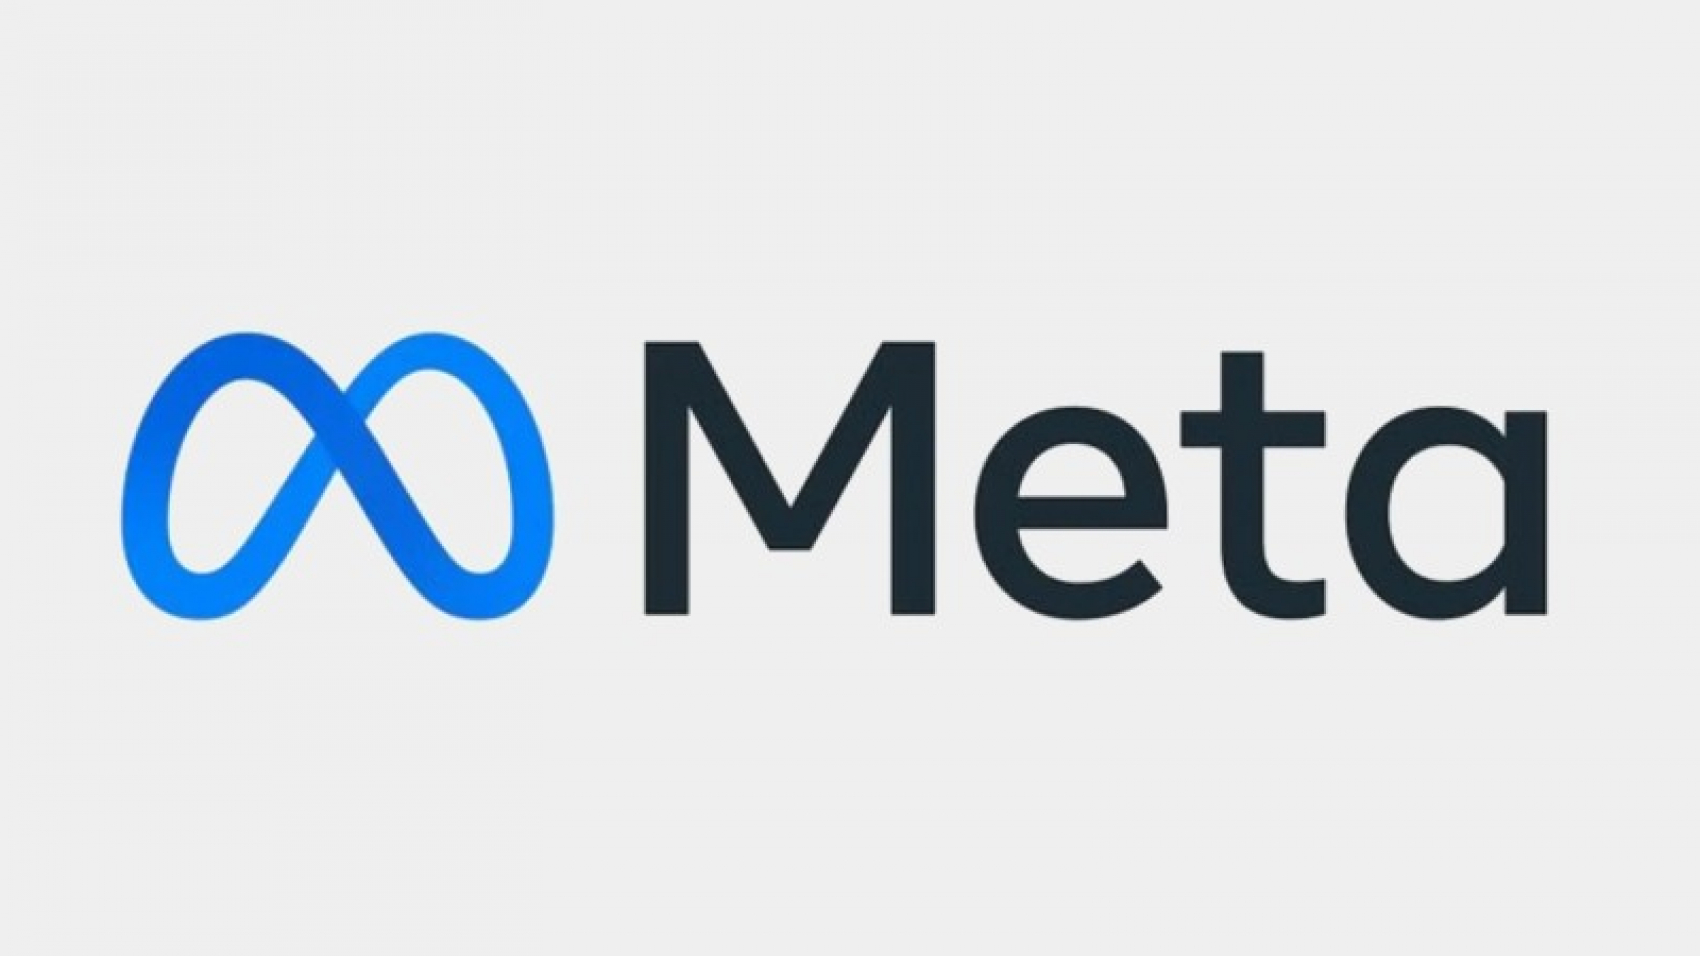 Facebook теперь Meta: ребрендинг и планы по созданию метавселенной